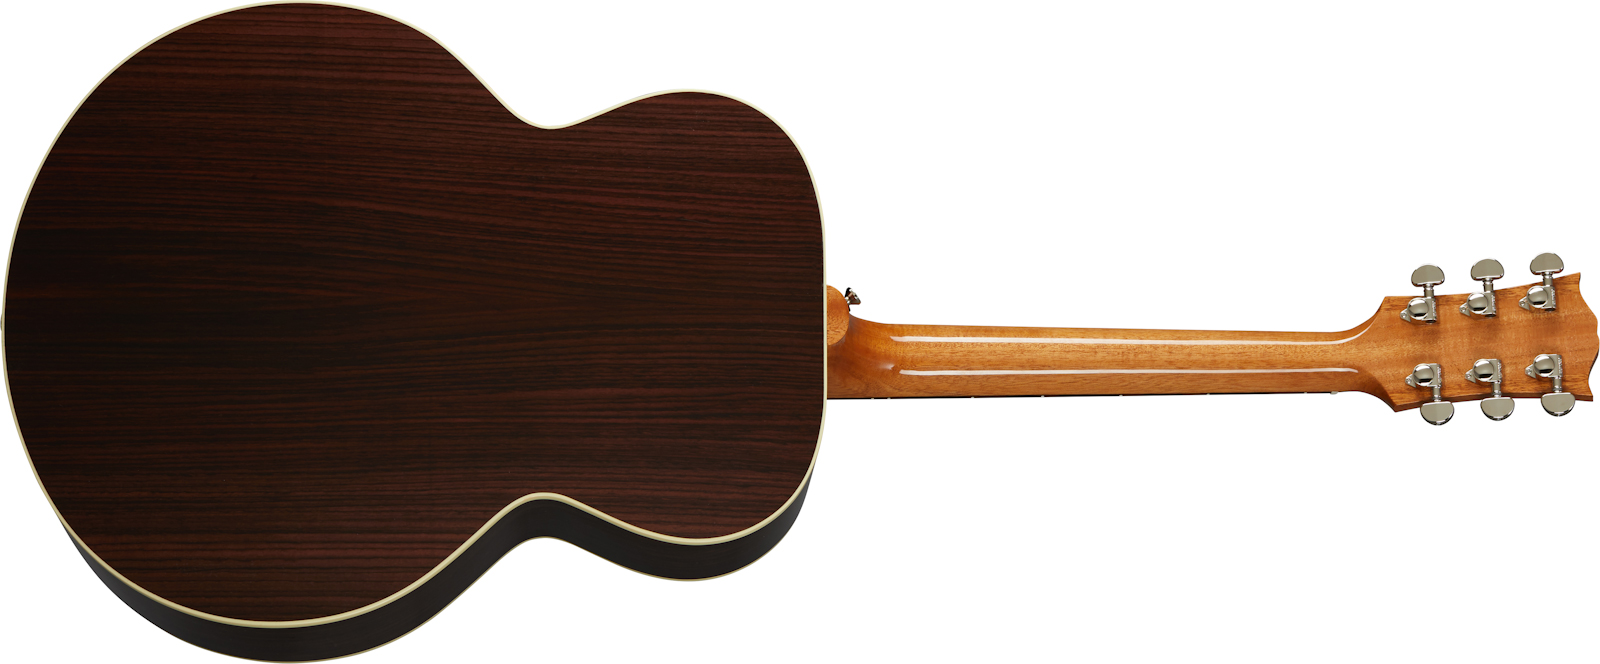 Gibson Sj-200 Studio Rosewood 2020 Super Jumbo Epicea Palissandre Rw - Antique Natural - Elektro-akoestische gitaar - Variation 1